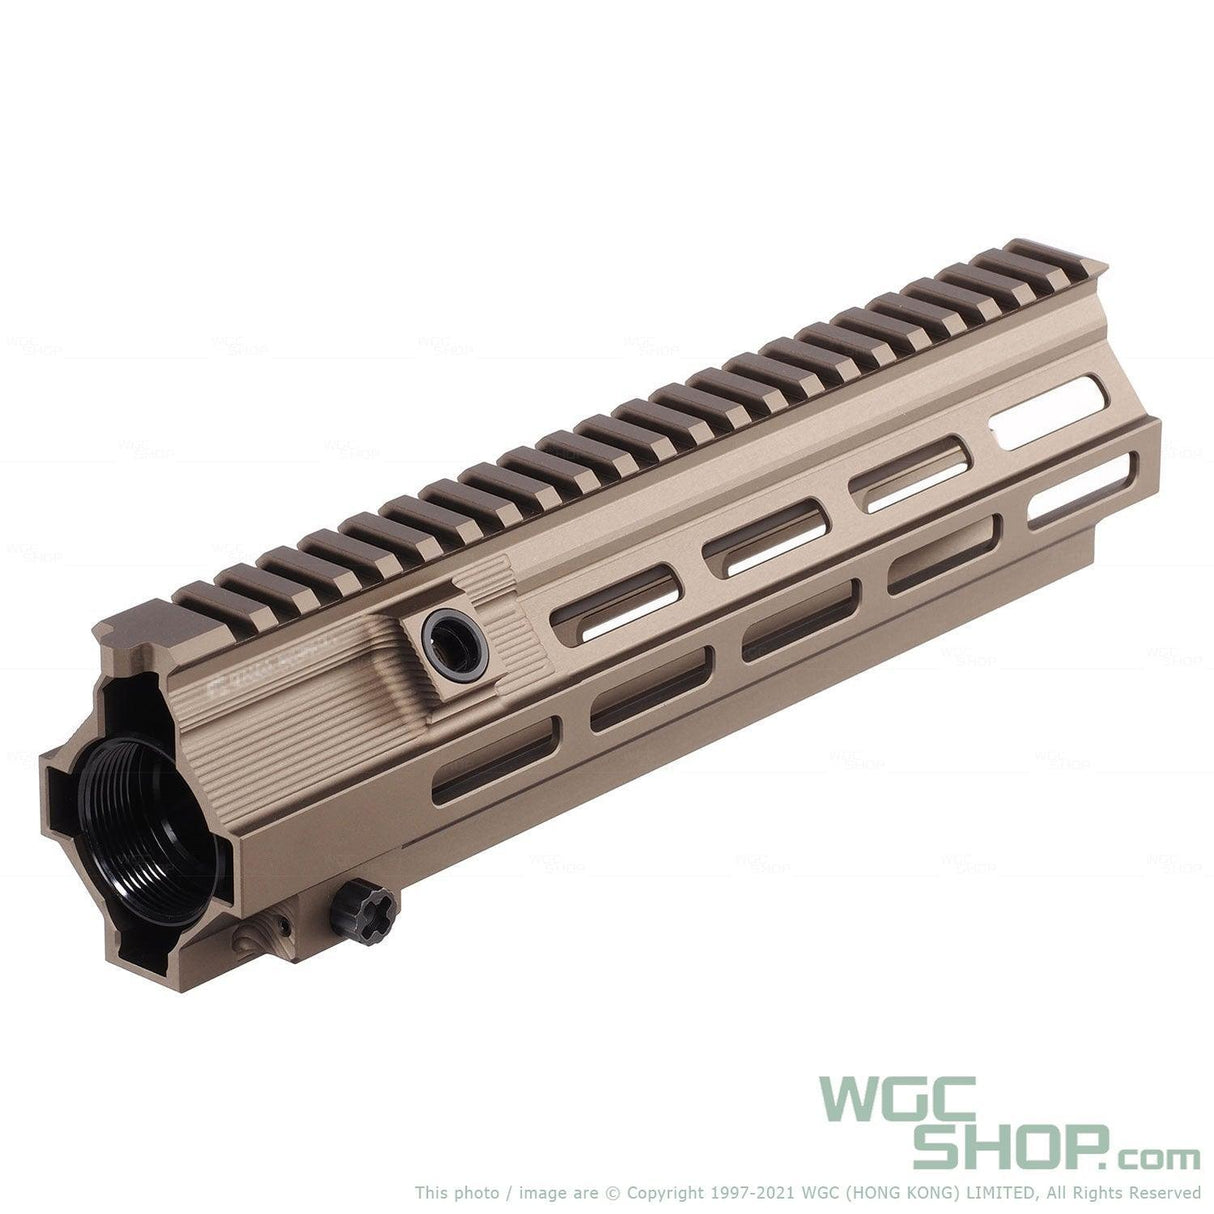 ANGRY GUN HK416 10.5 Inch Super Modular M-lok Rail for Airsoft - WGC Shop